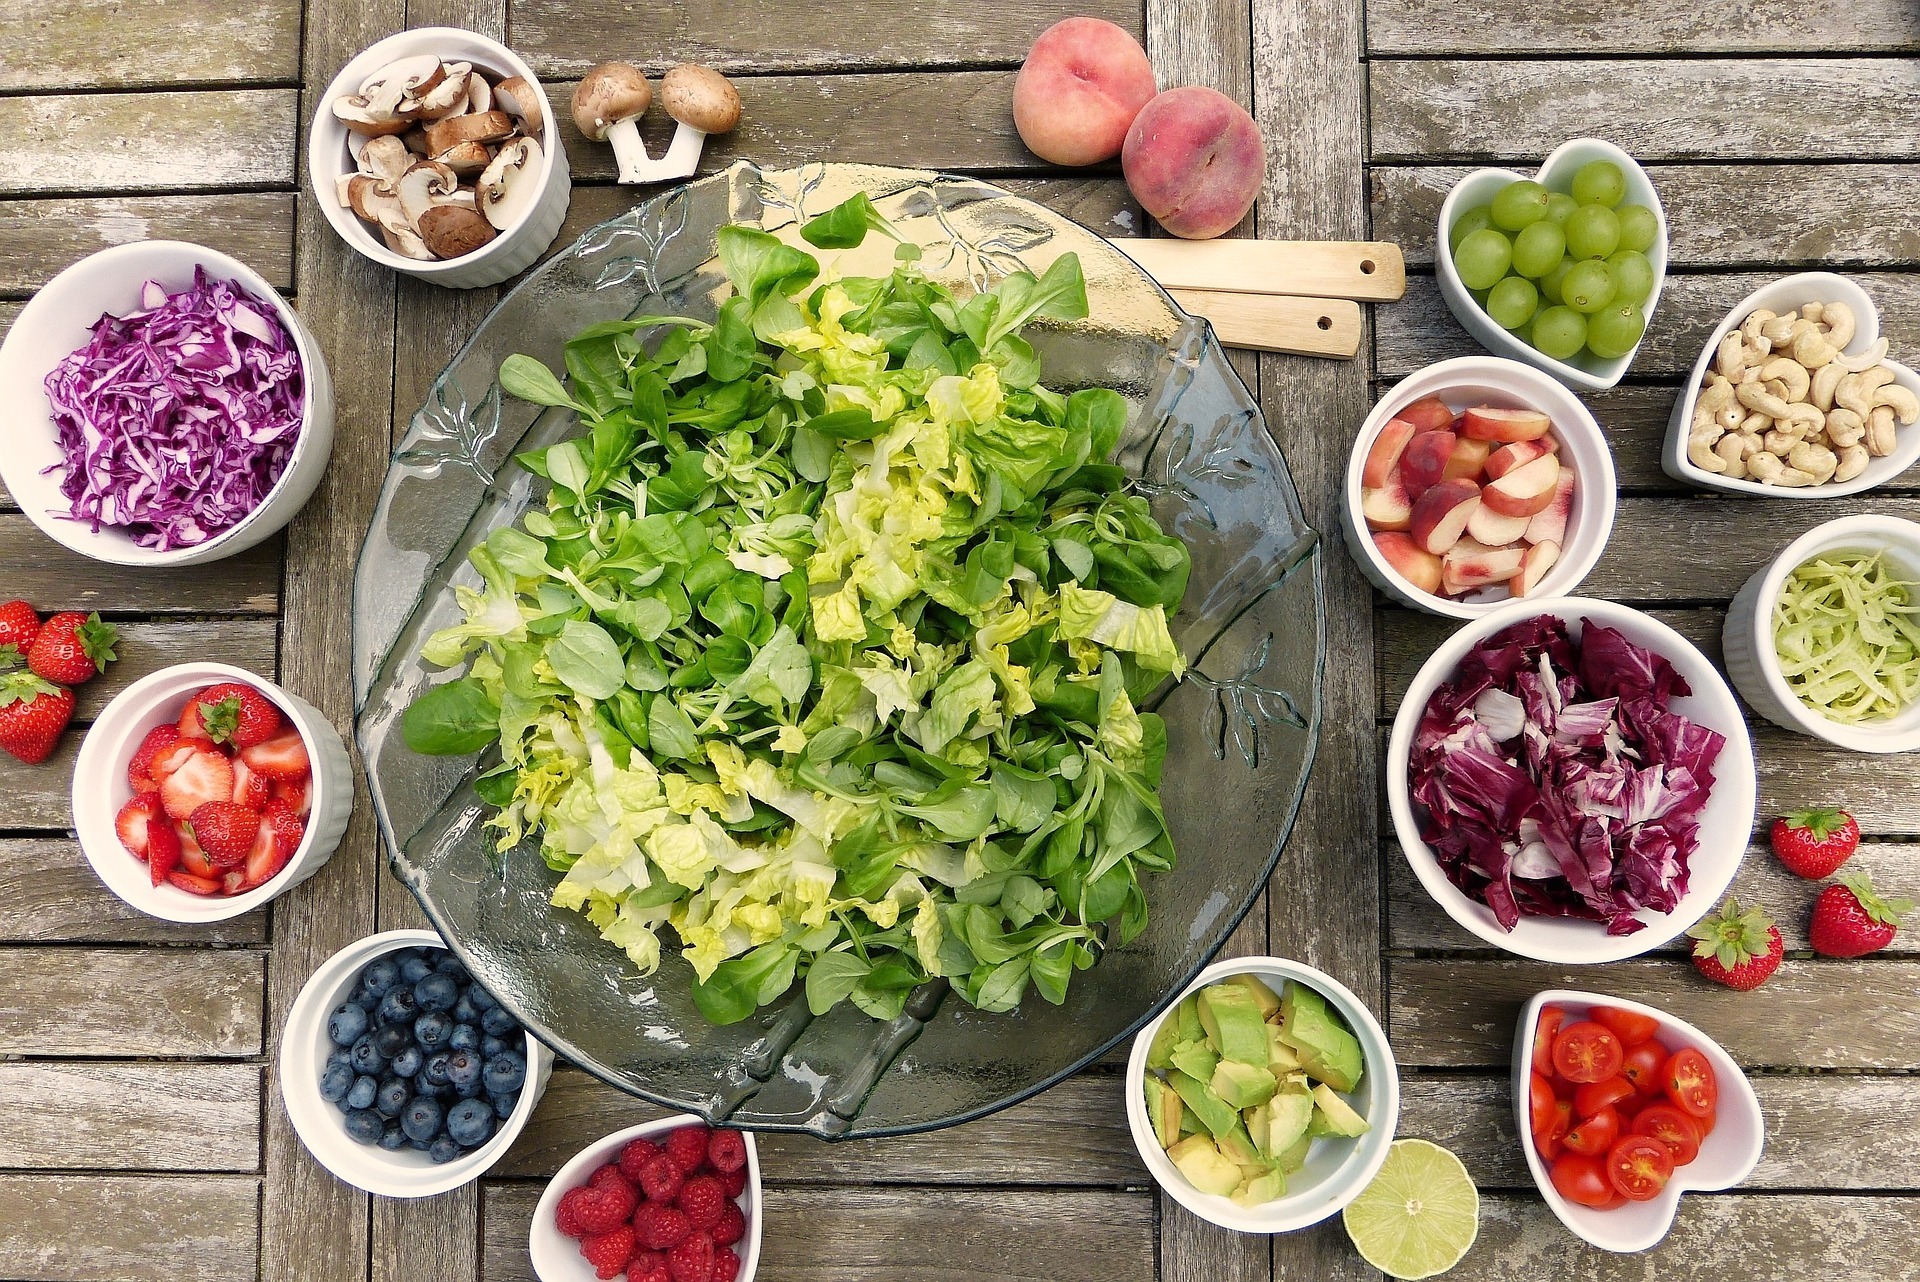 Das Bild zeigt frisches Obst und Gemüse, wie z.B. Salat, Pilze, Erdbeeren oder Heidelbeeren in kleinen Schälchen von oben.